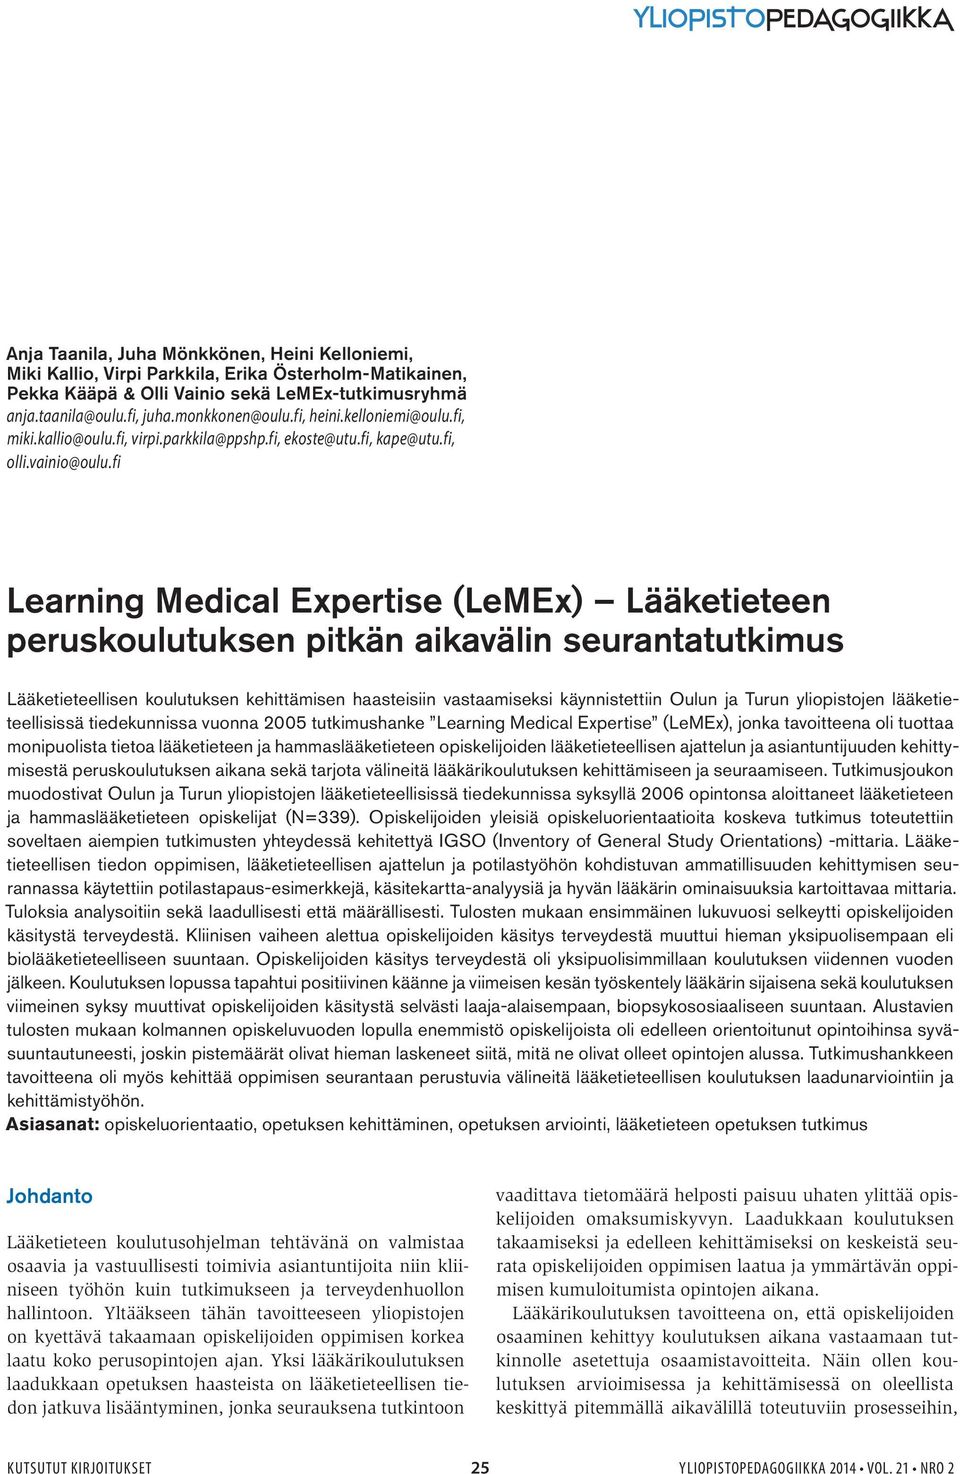 fi Learning Medical Expertise (LeMEx) Lääketieteen peruskoulutuksen pitkän aikavälin seurantatutkimus Lääketieteellisen koulutuksen kehittämisen haasteisiin vastaamiseksi käynnistettiin Oulun ja